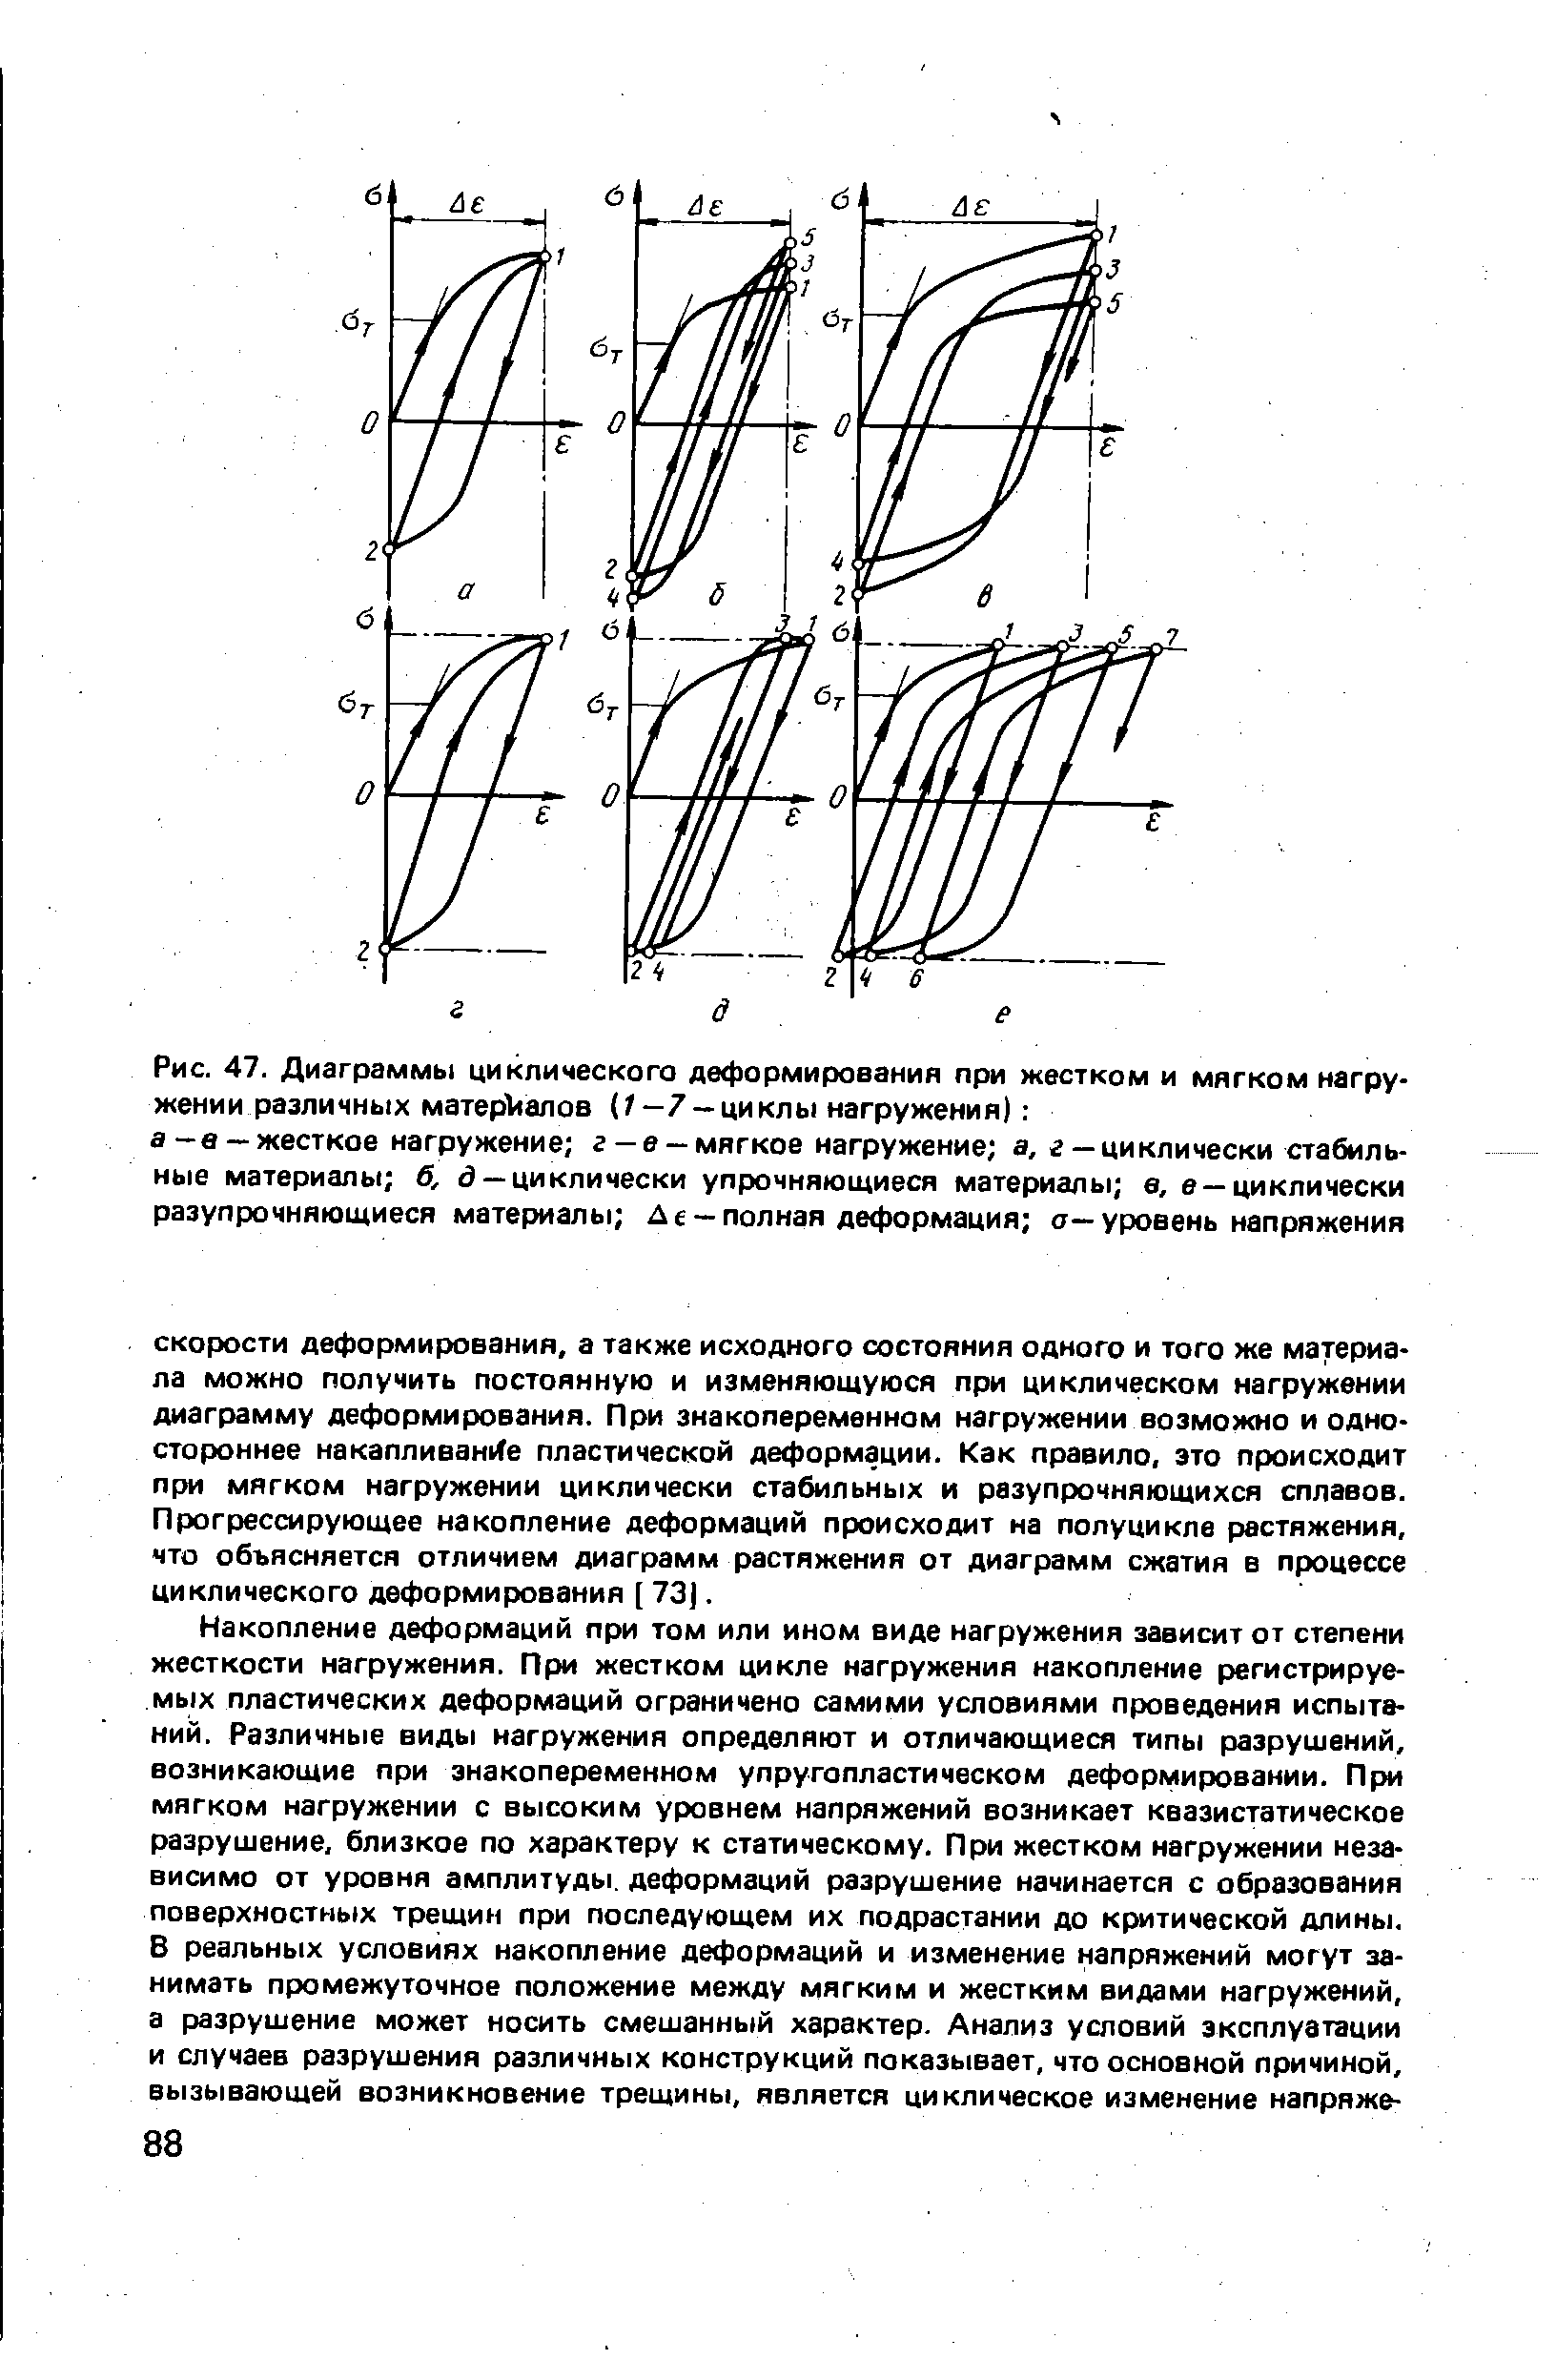 Рис. 47. Диаграммы циклического деформирования при жестком и <a href="/info/28780">мягком нагружении</a> различных мaтepVlaлoв (/—7 —циклы нагружения) 
